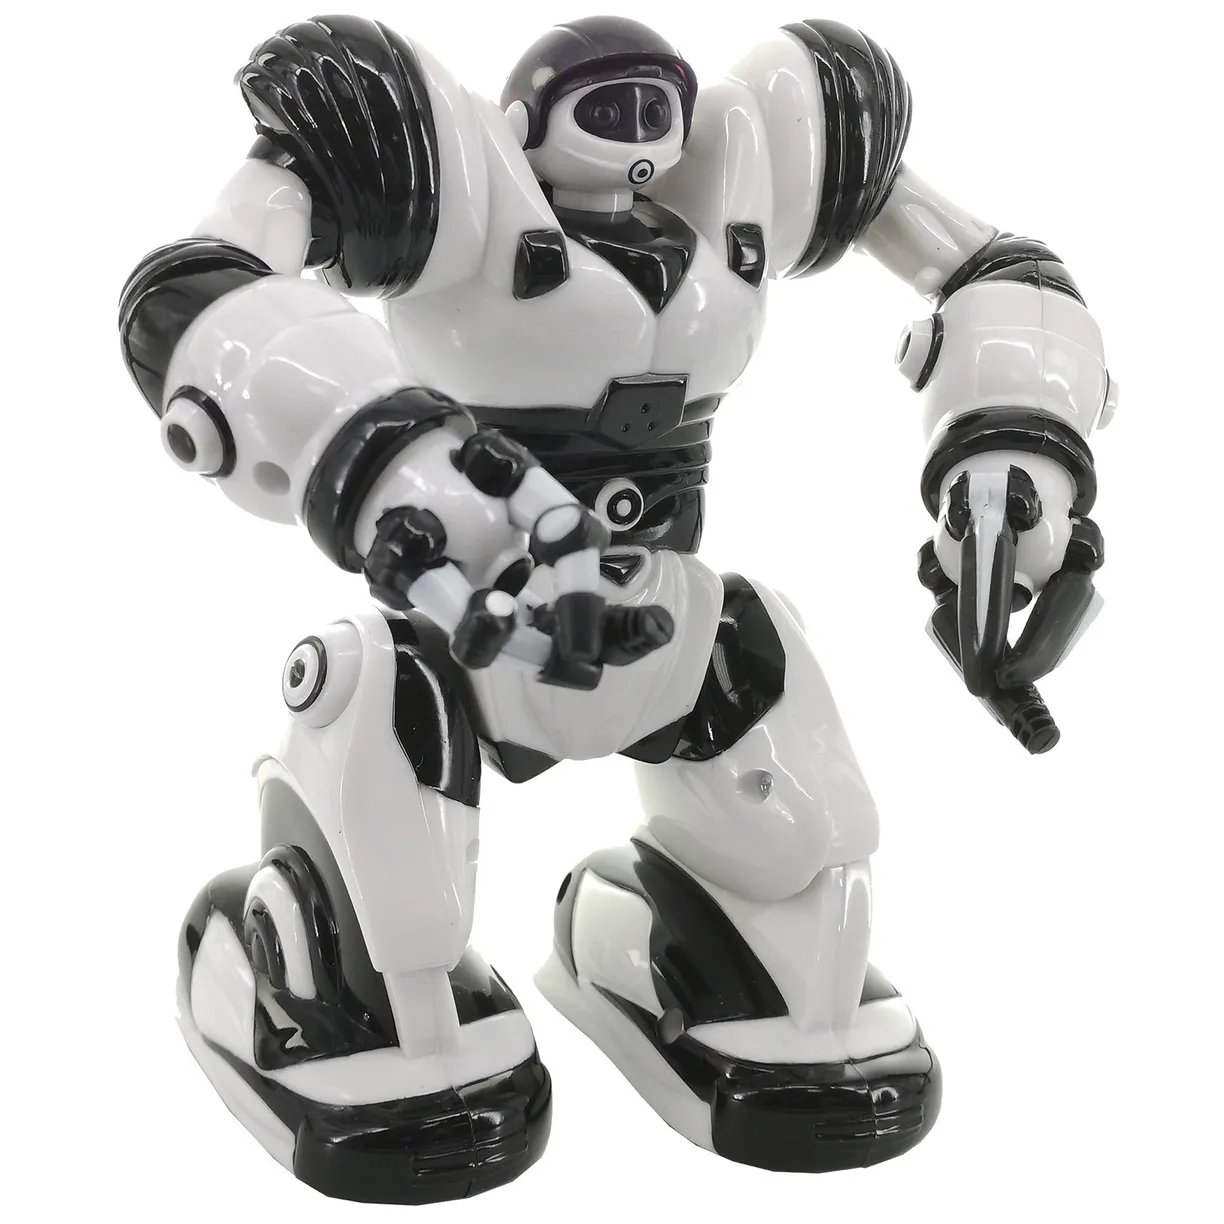 Робот Mini Robosapien - фото